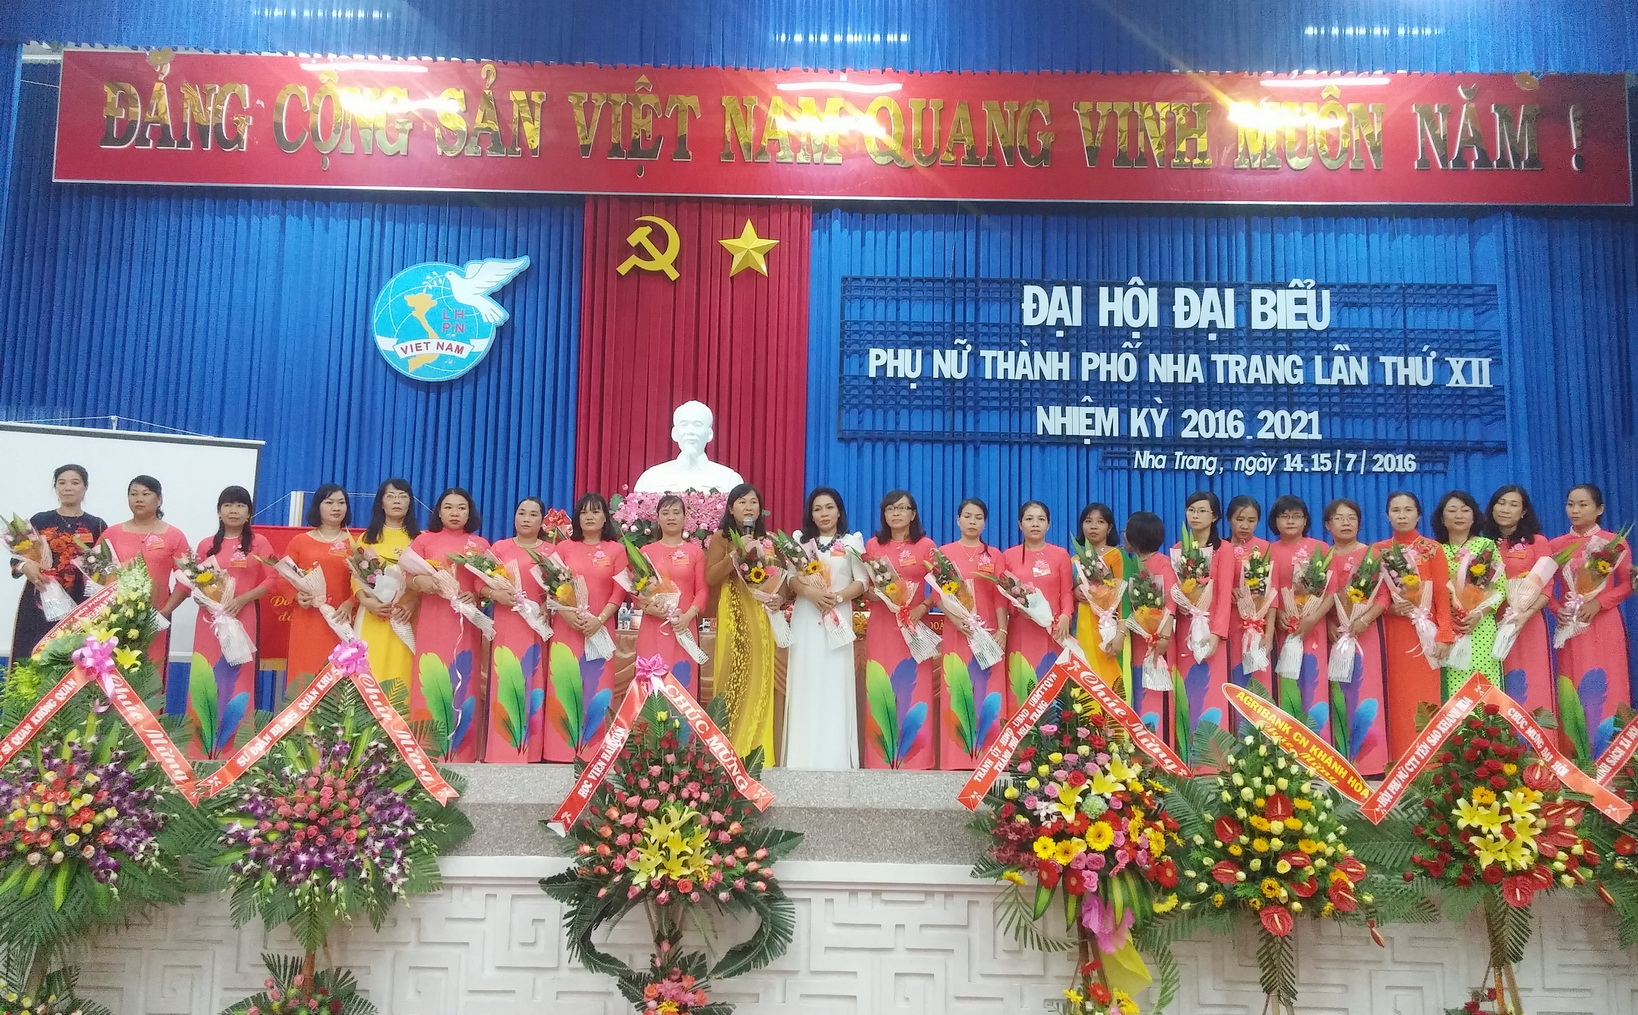 t-TP. Nha Trang: Đại hội Đại biểu Phụ nữ lần thứ XII